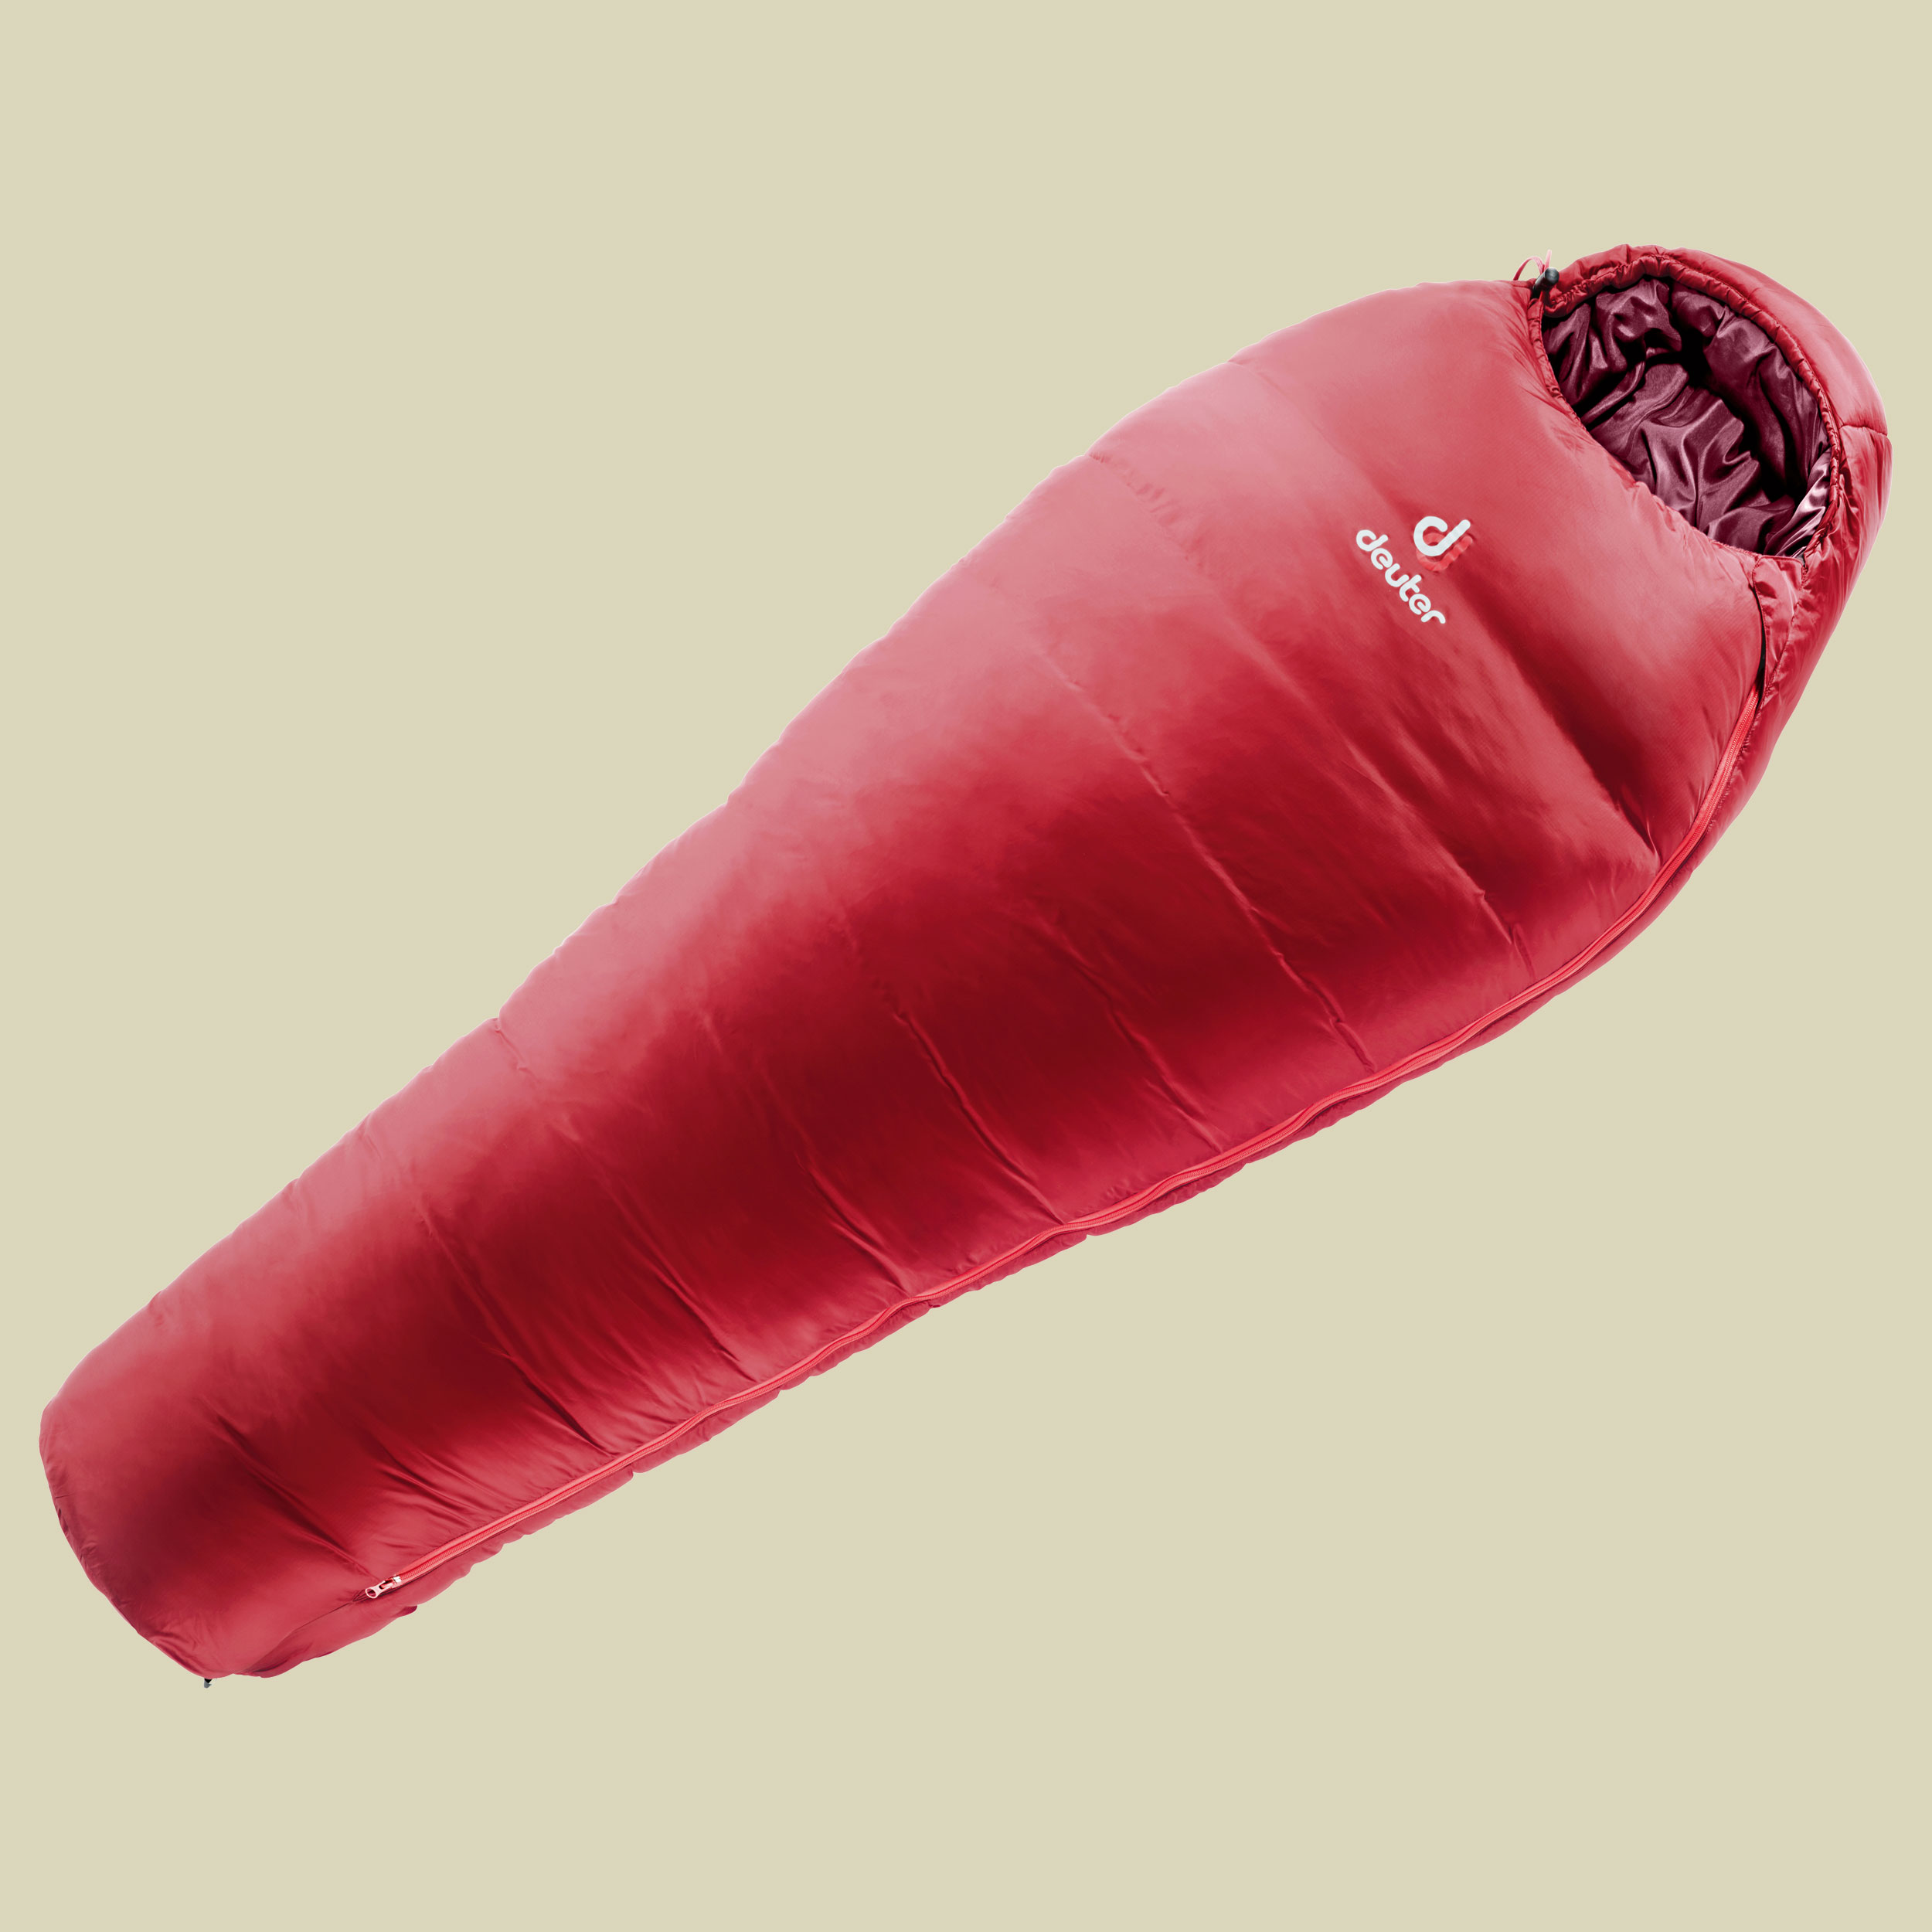 Orbit minus 5 Grad SL Women bis Körpergröße 175 cm Farbe cranberry-aubergine, Reißverschluss rechts